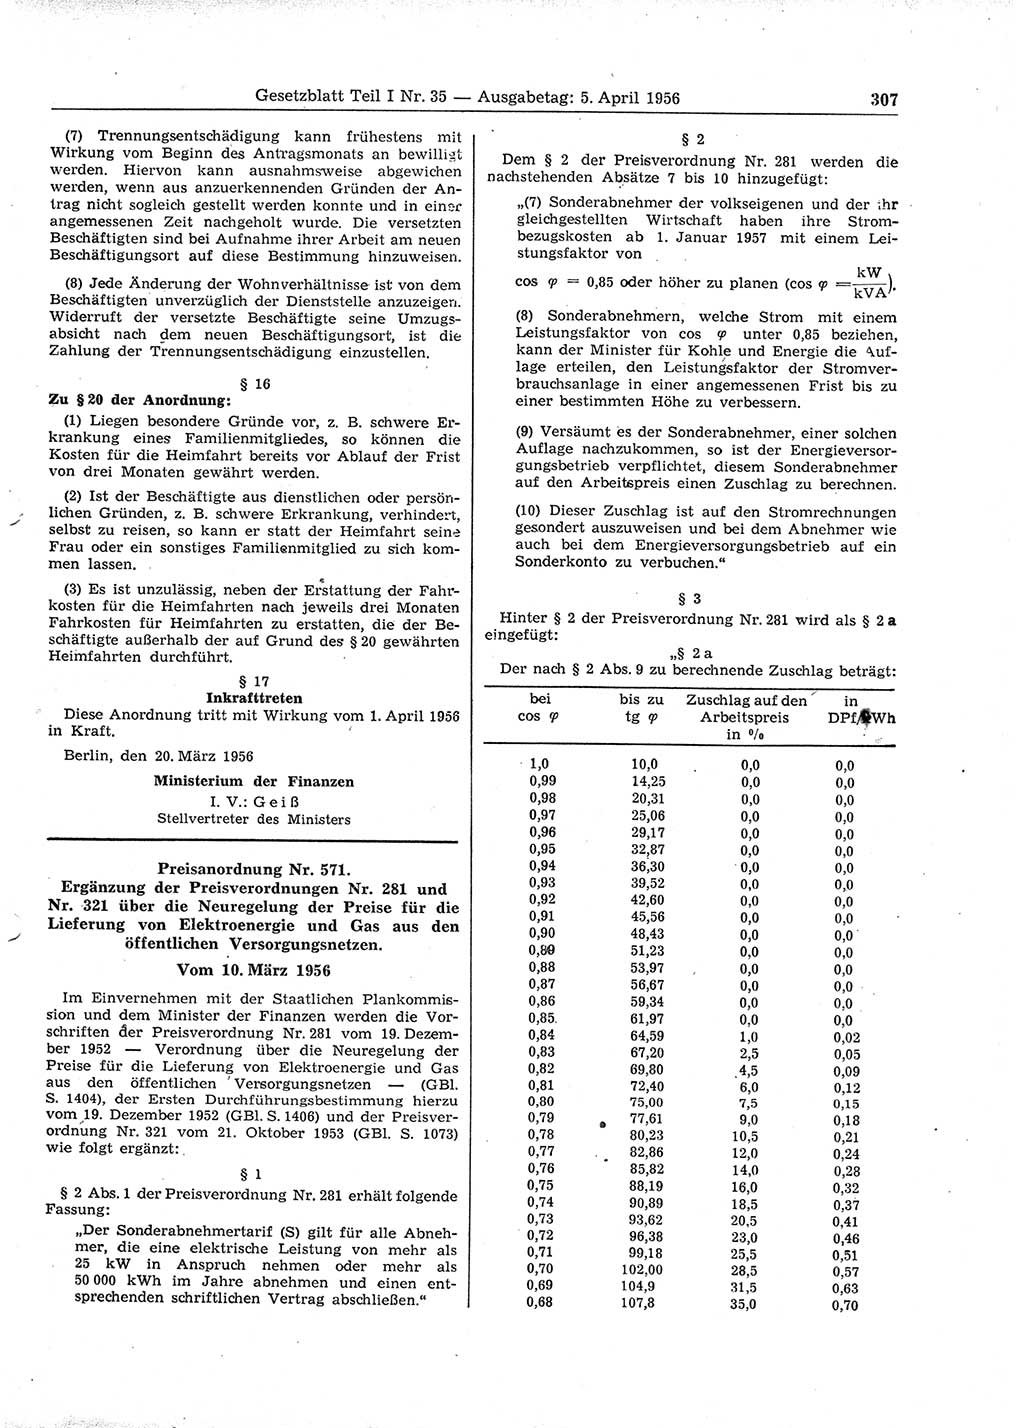 Gesetzblatt (GBl.) der Deutschen Demokratischen Republik (DDR) Teil Ⅰ 1956, Seite 307 (GBl. DDR Ⅰ 1956, S. 307)